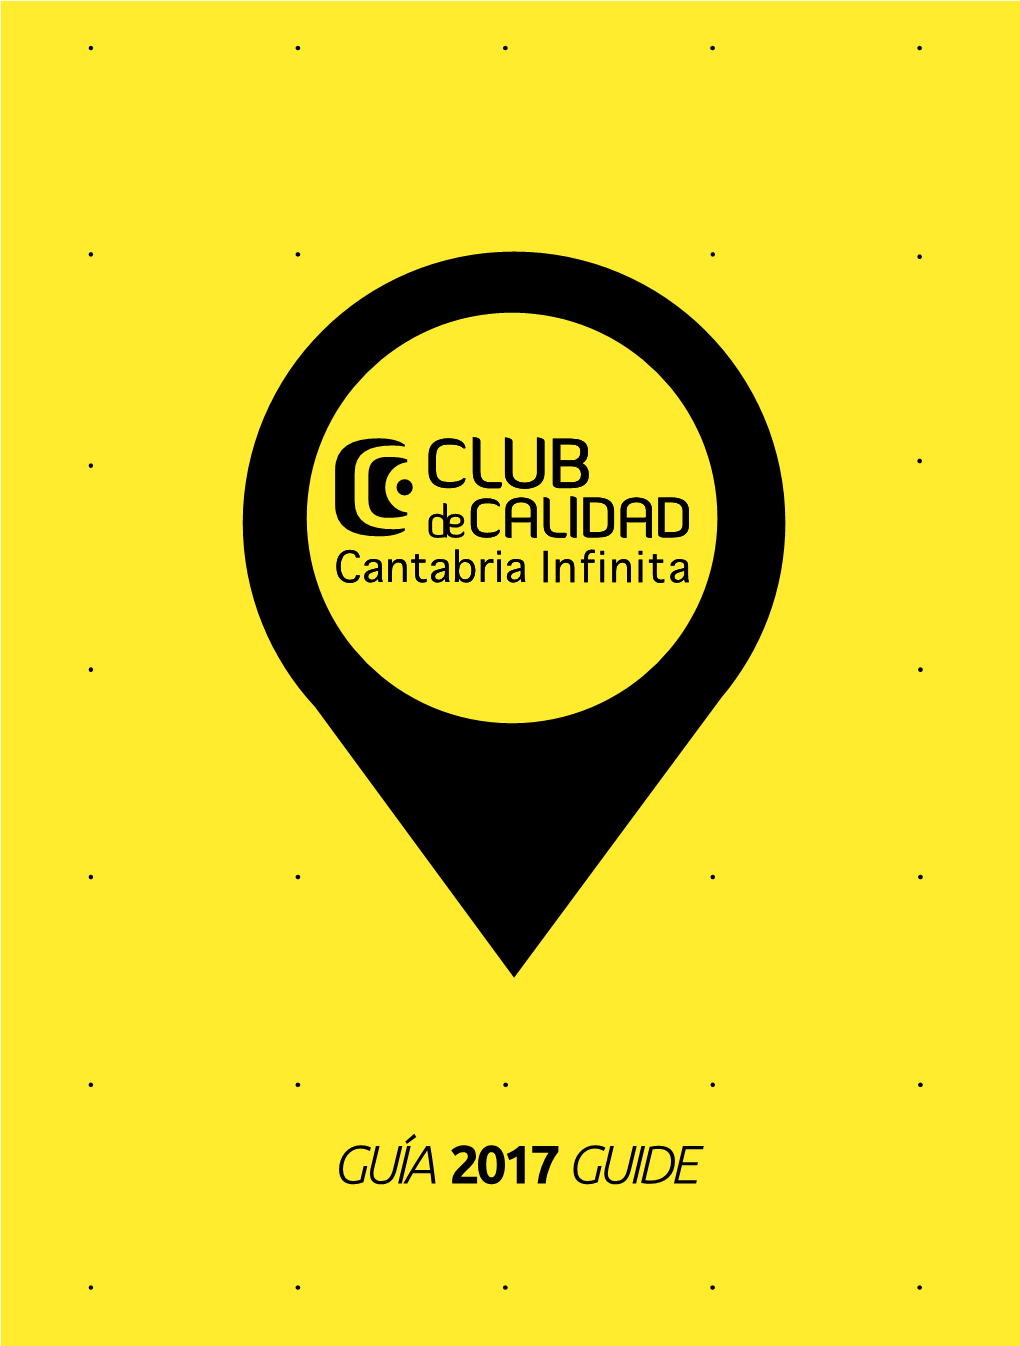 Guía 2017 Guide Guía 2017 Guide